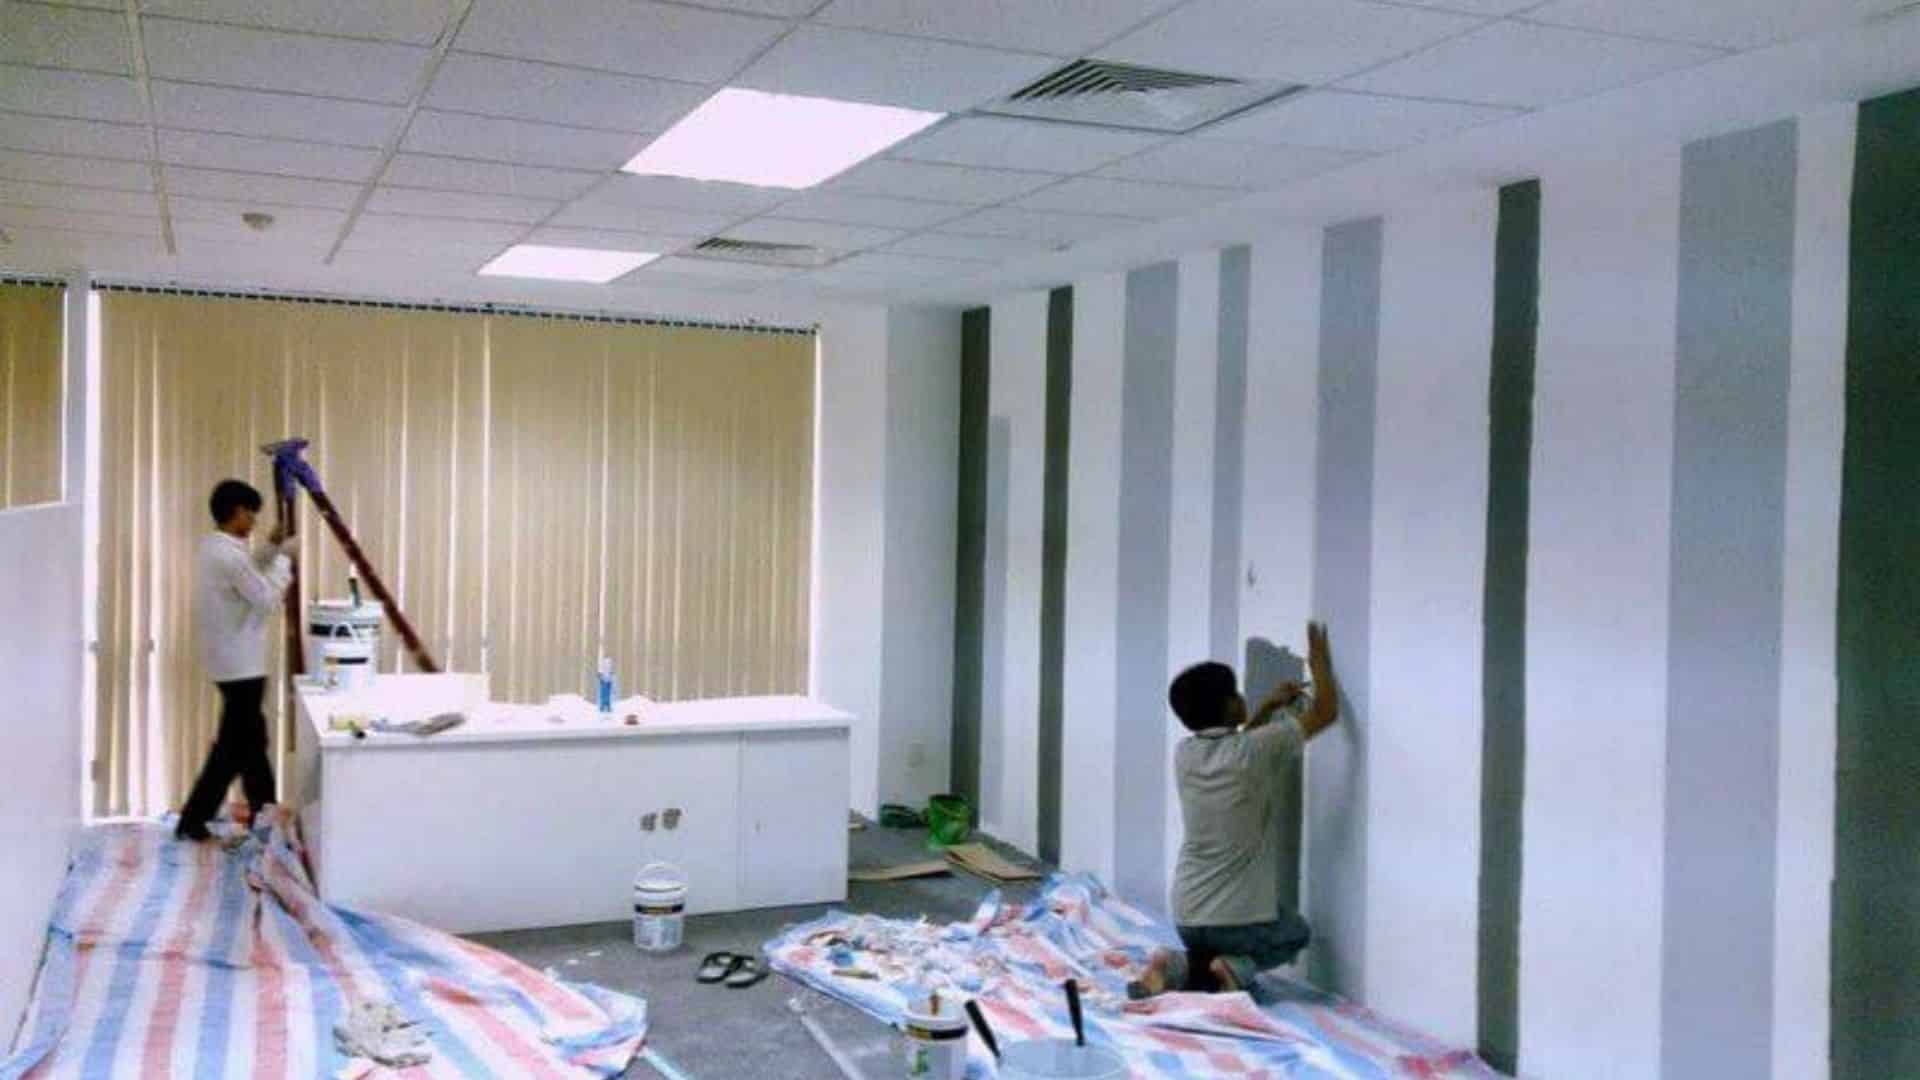 Dịch Vụ Sửa Nhà Triều Nguyễn Đà Nẵng – Đơn vị thi công sửa nhà trọn gói tại Đà Nẵng giá tốt